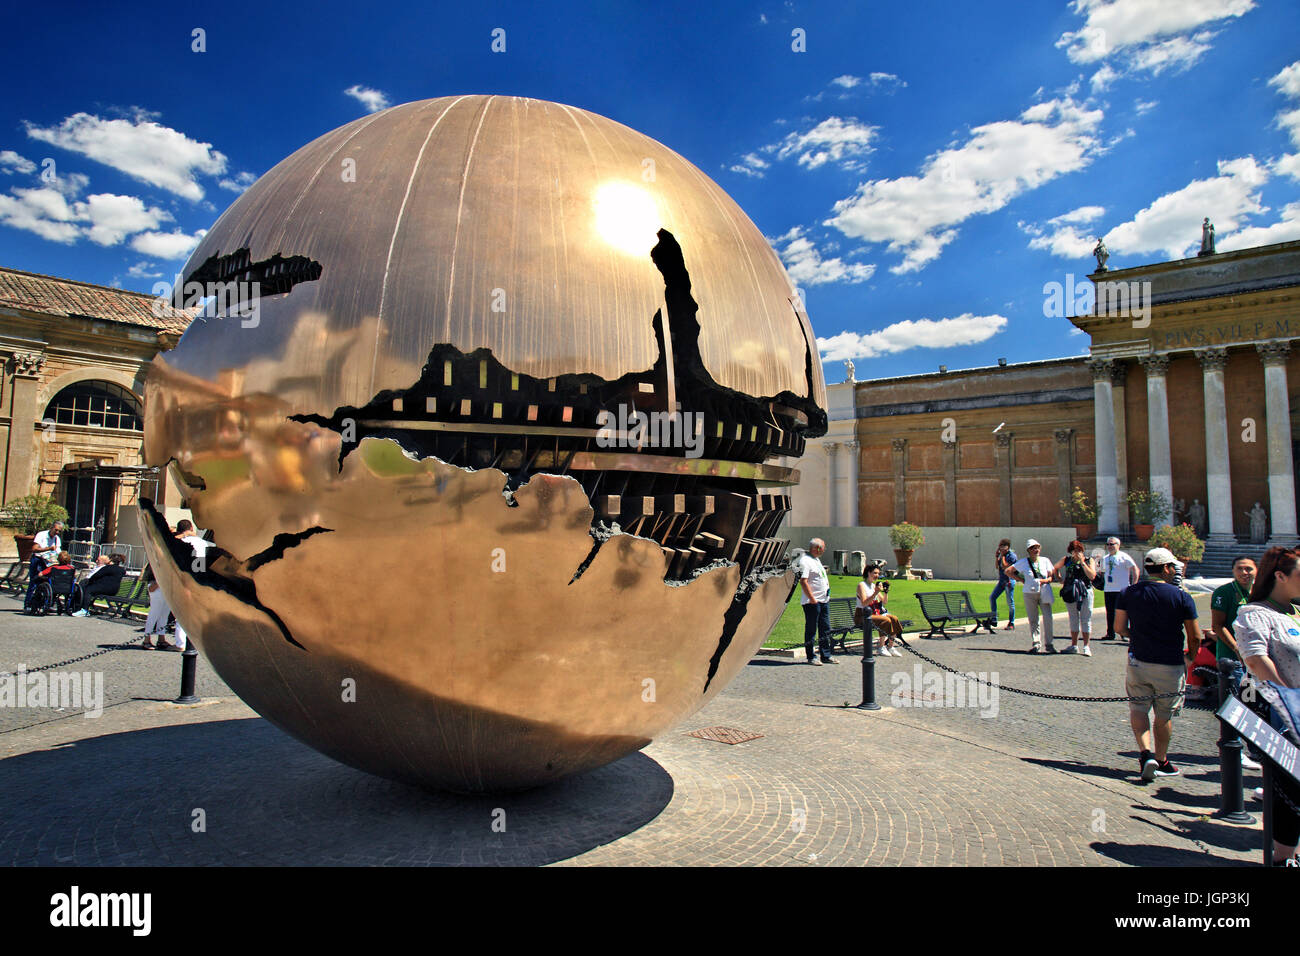 La sphère à l'intérieur d'une sphère (alson connu sous le nom de 'Sfera con sfera"), oeuvre d'Arnaldo Pomodoro dans la cour des Musées du Vatican, Vatican. Banque D'Images